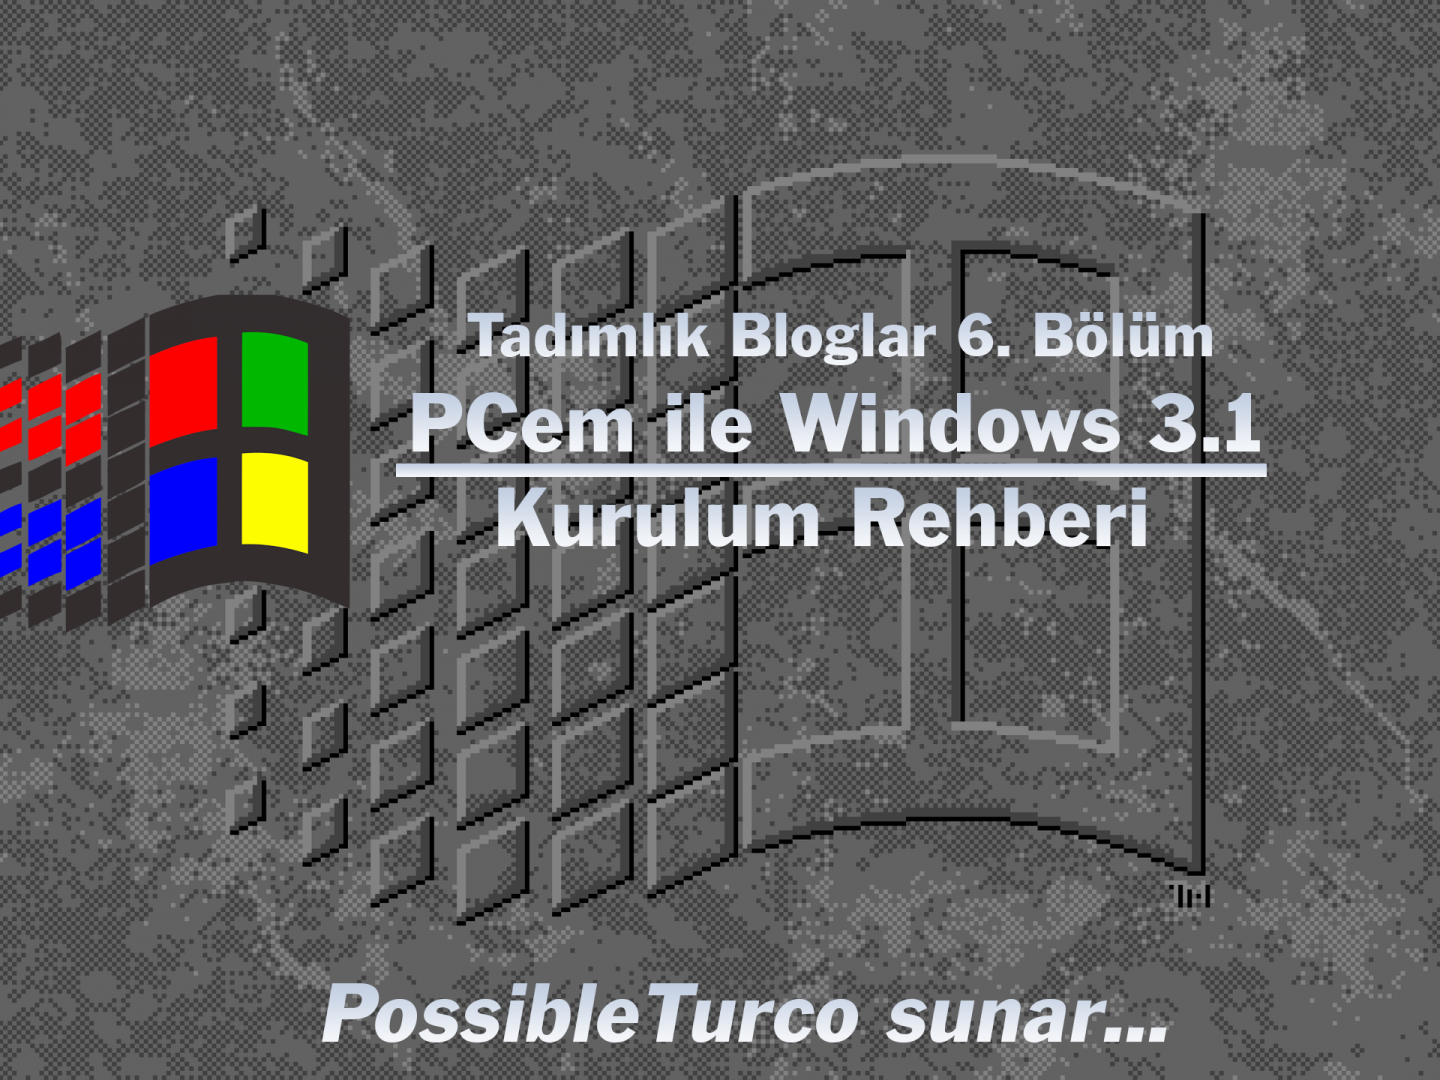 Windows 3.1 Kurulum Rehberi Kapak Fotoğrafı.png